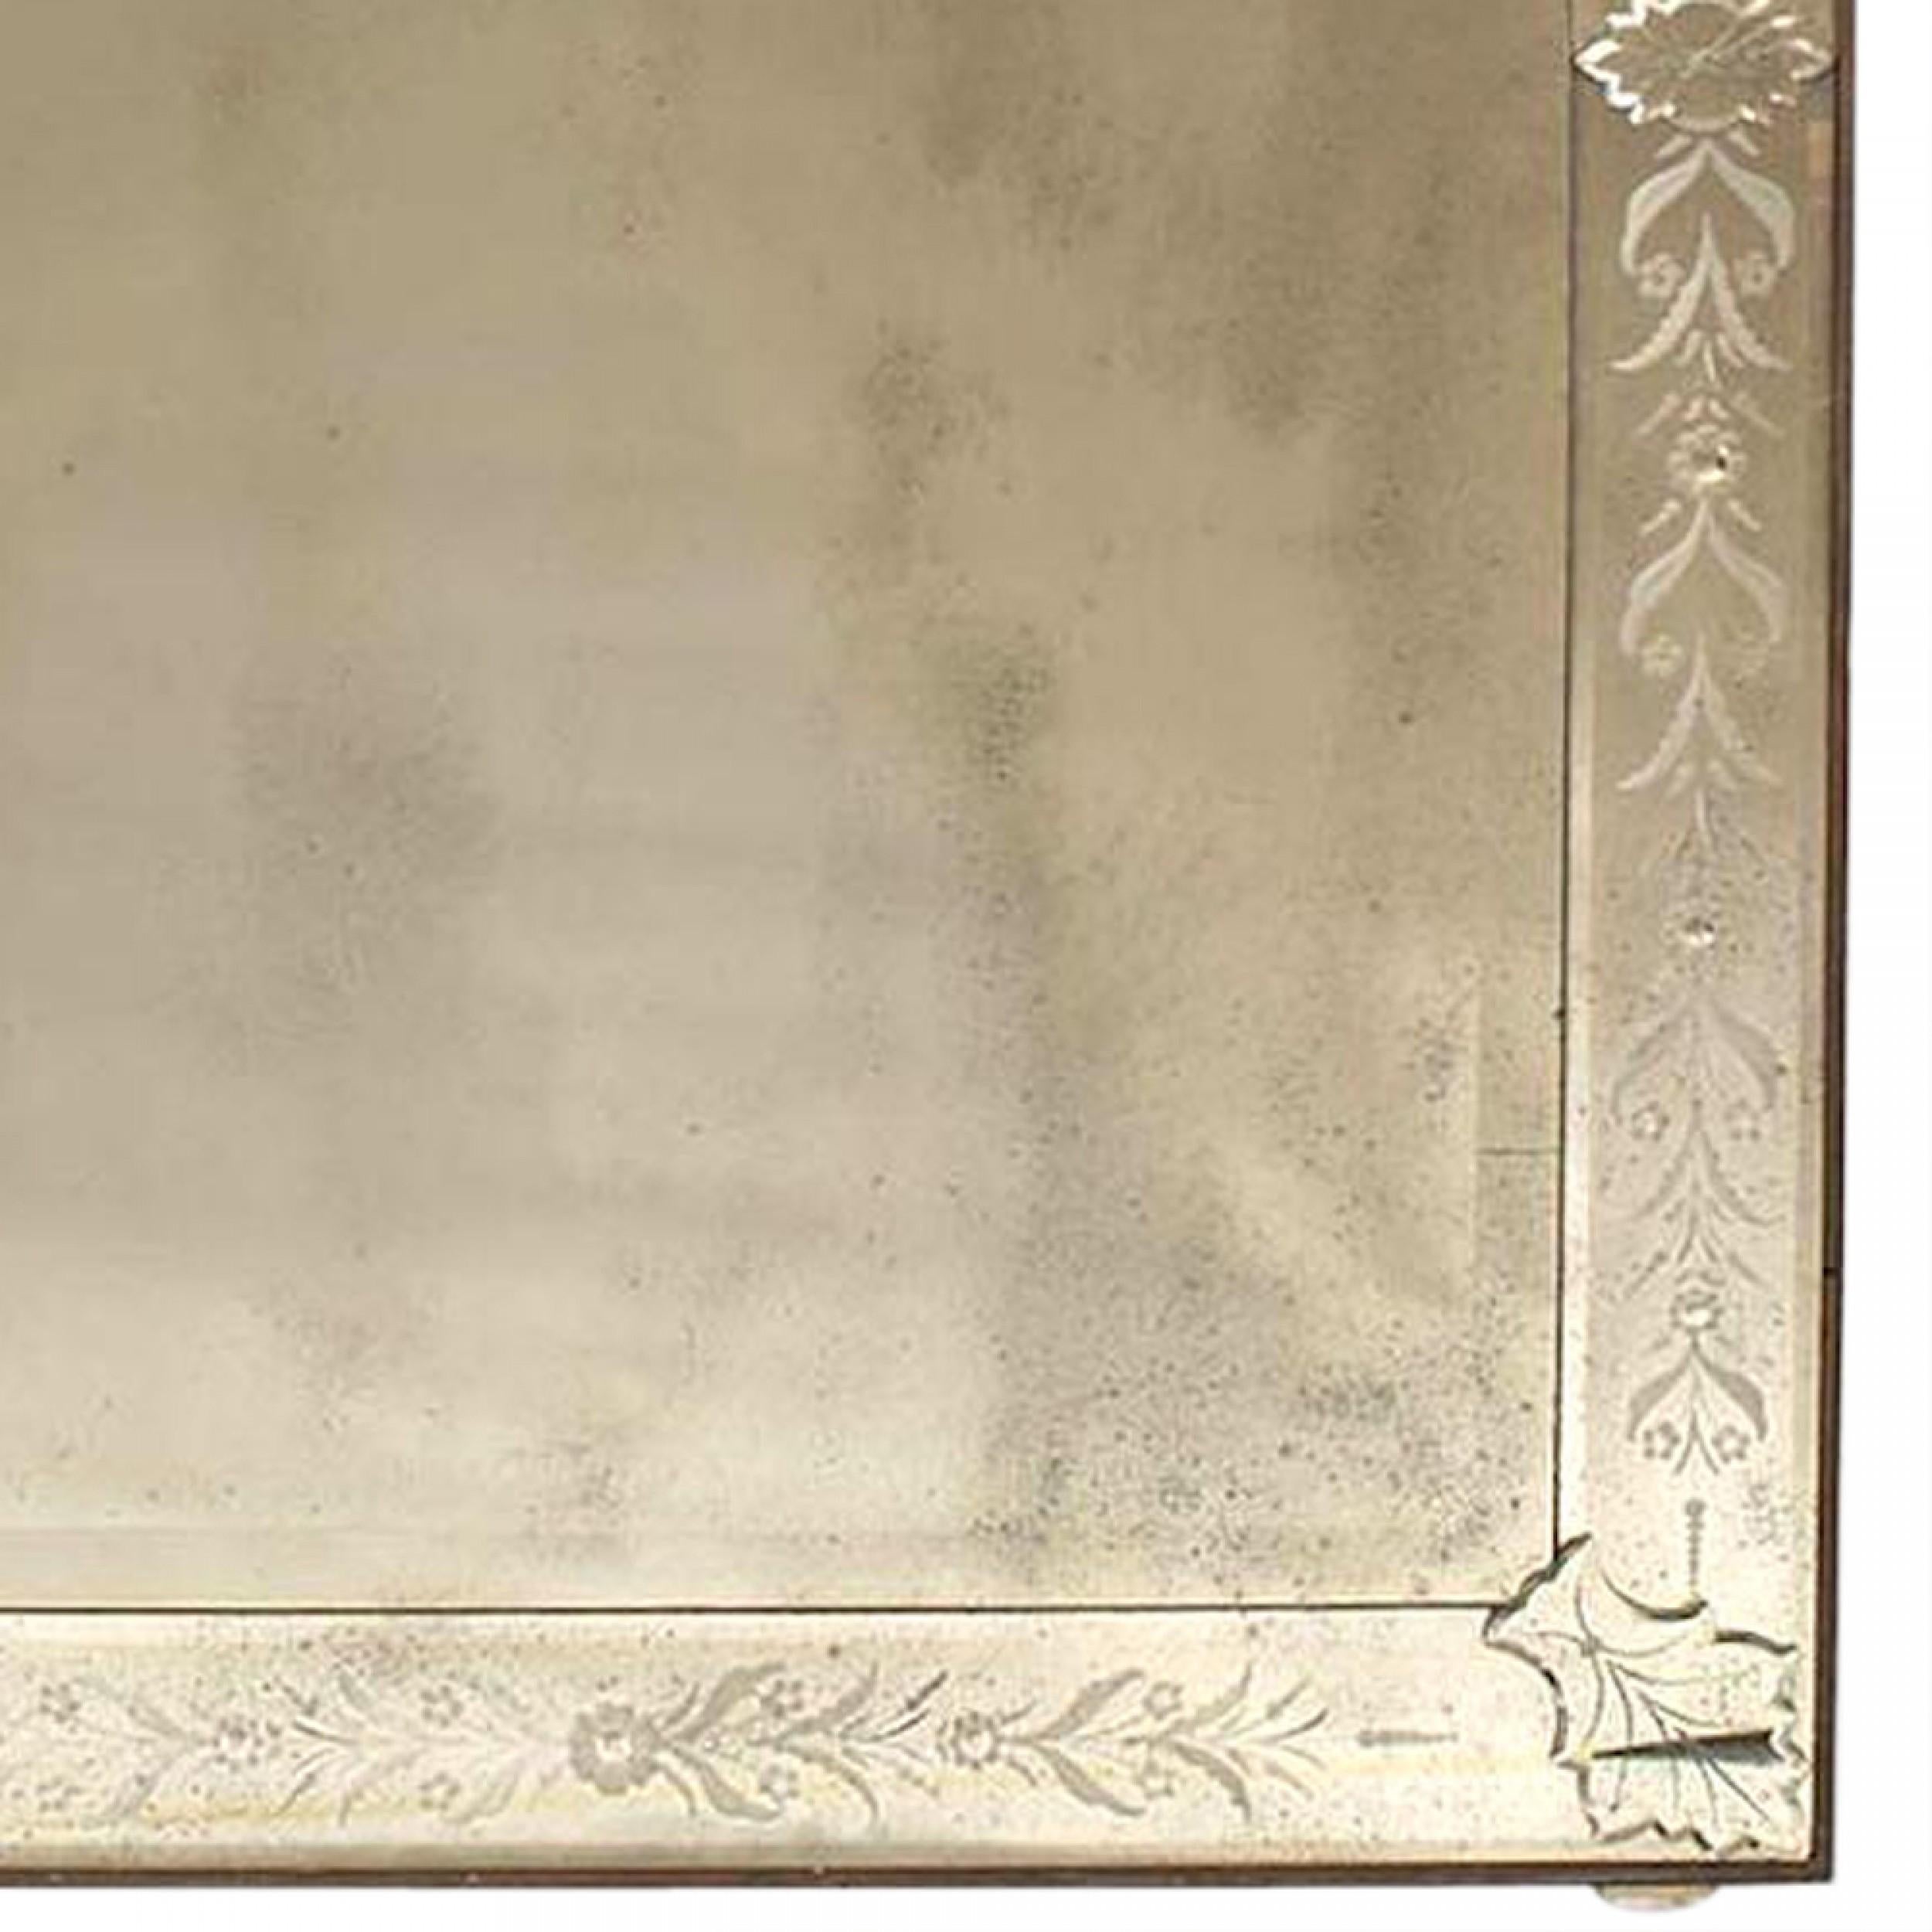 2 miroirs muraux rectangulaires de Murano vénitien italien (20e siècle) avec bordure biseautée et gravée de motifs floraux et de volutes et miroir central biseauté. (ONGARO E FUGA) (PRIX UNITAIRE)
